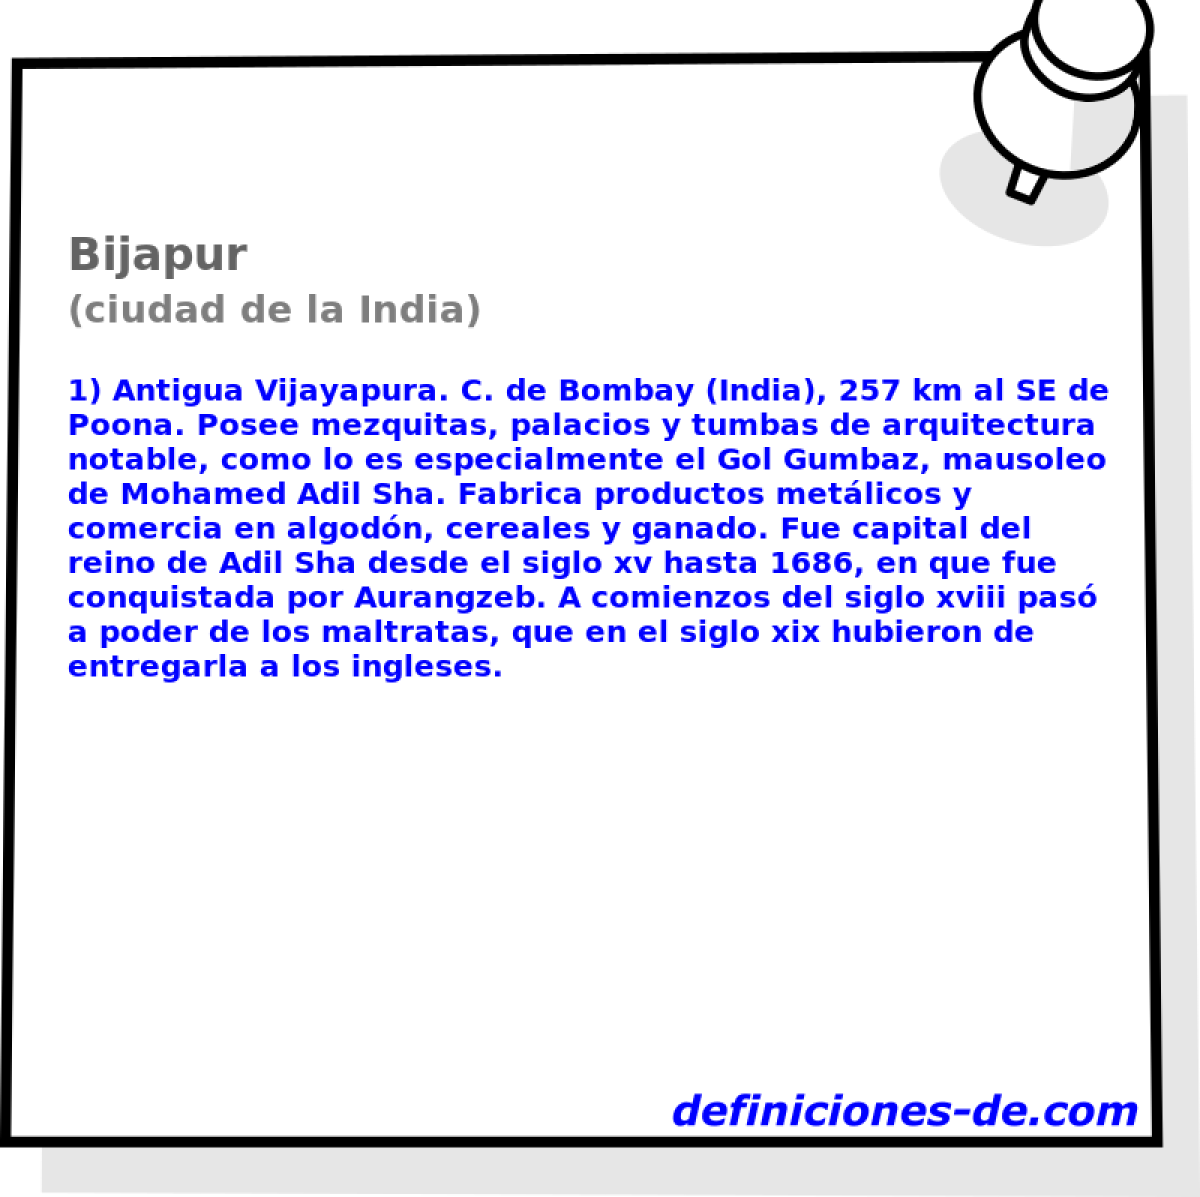 Bijapur (ciudad de la India)